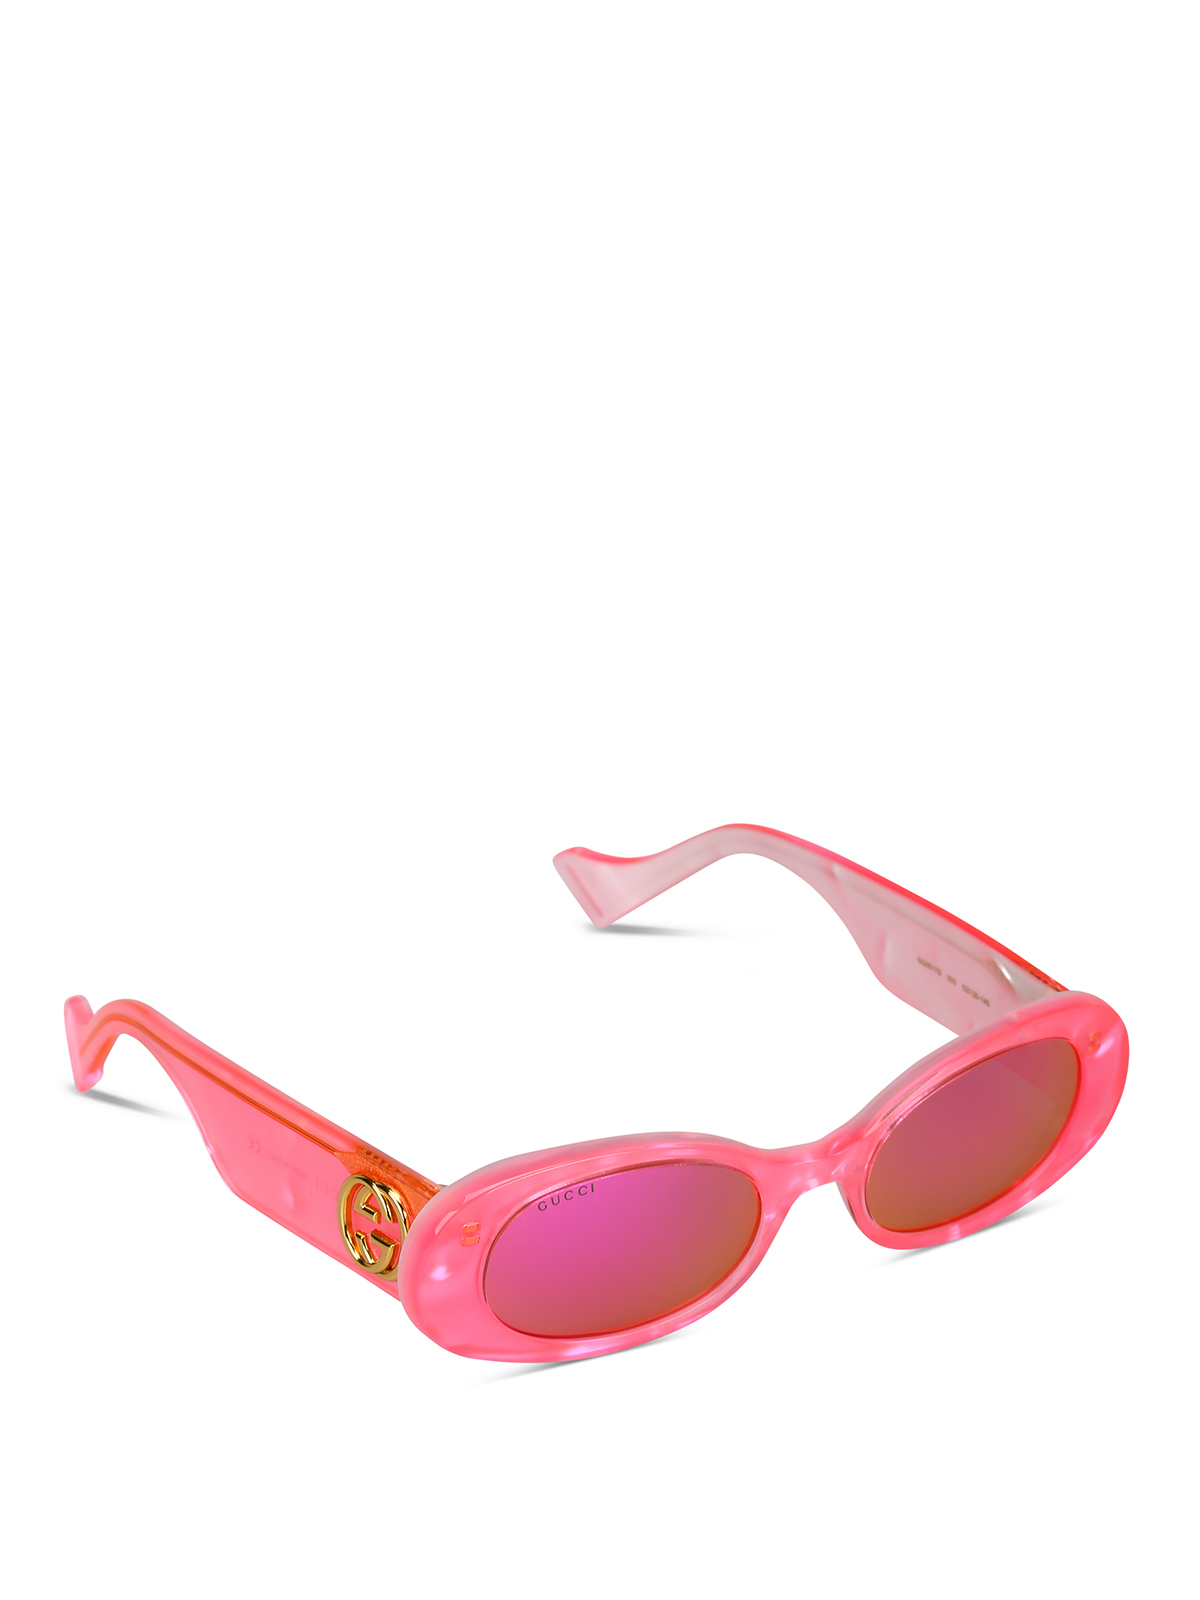 gucci pink shades